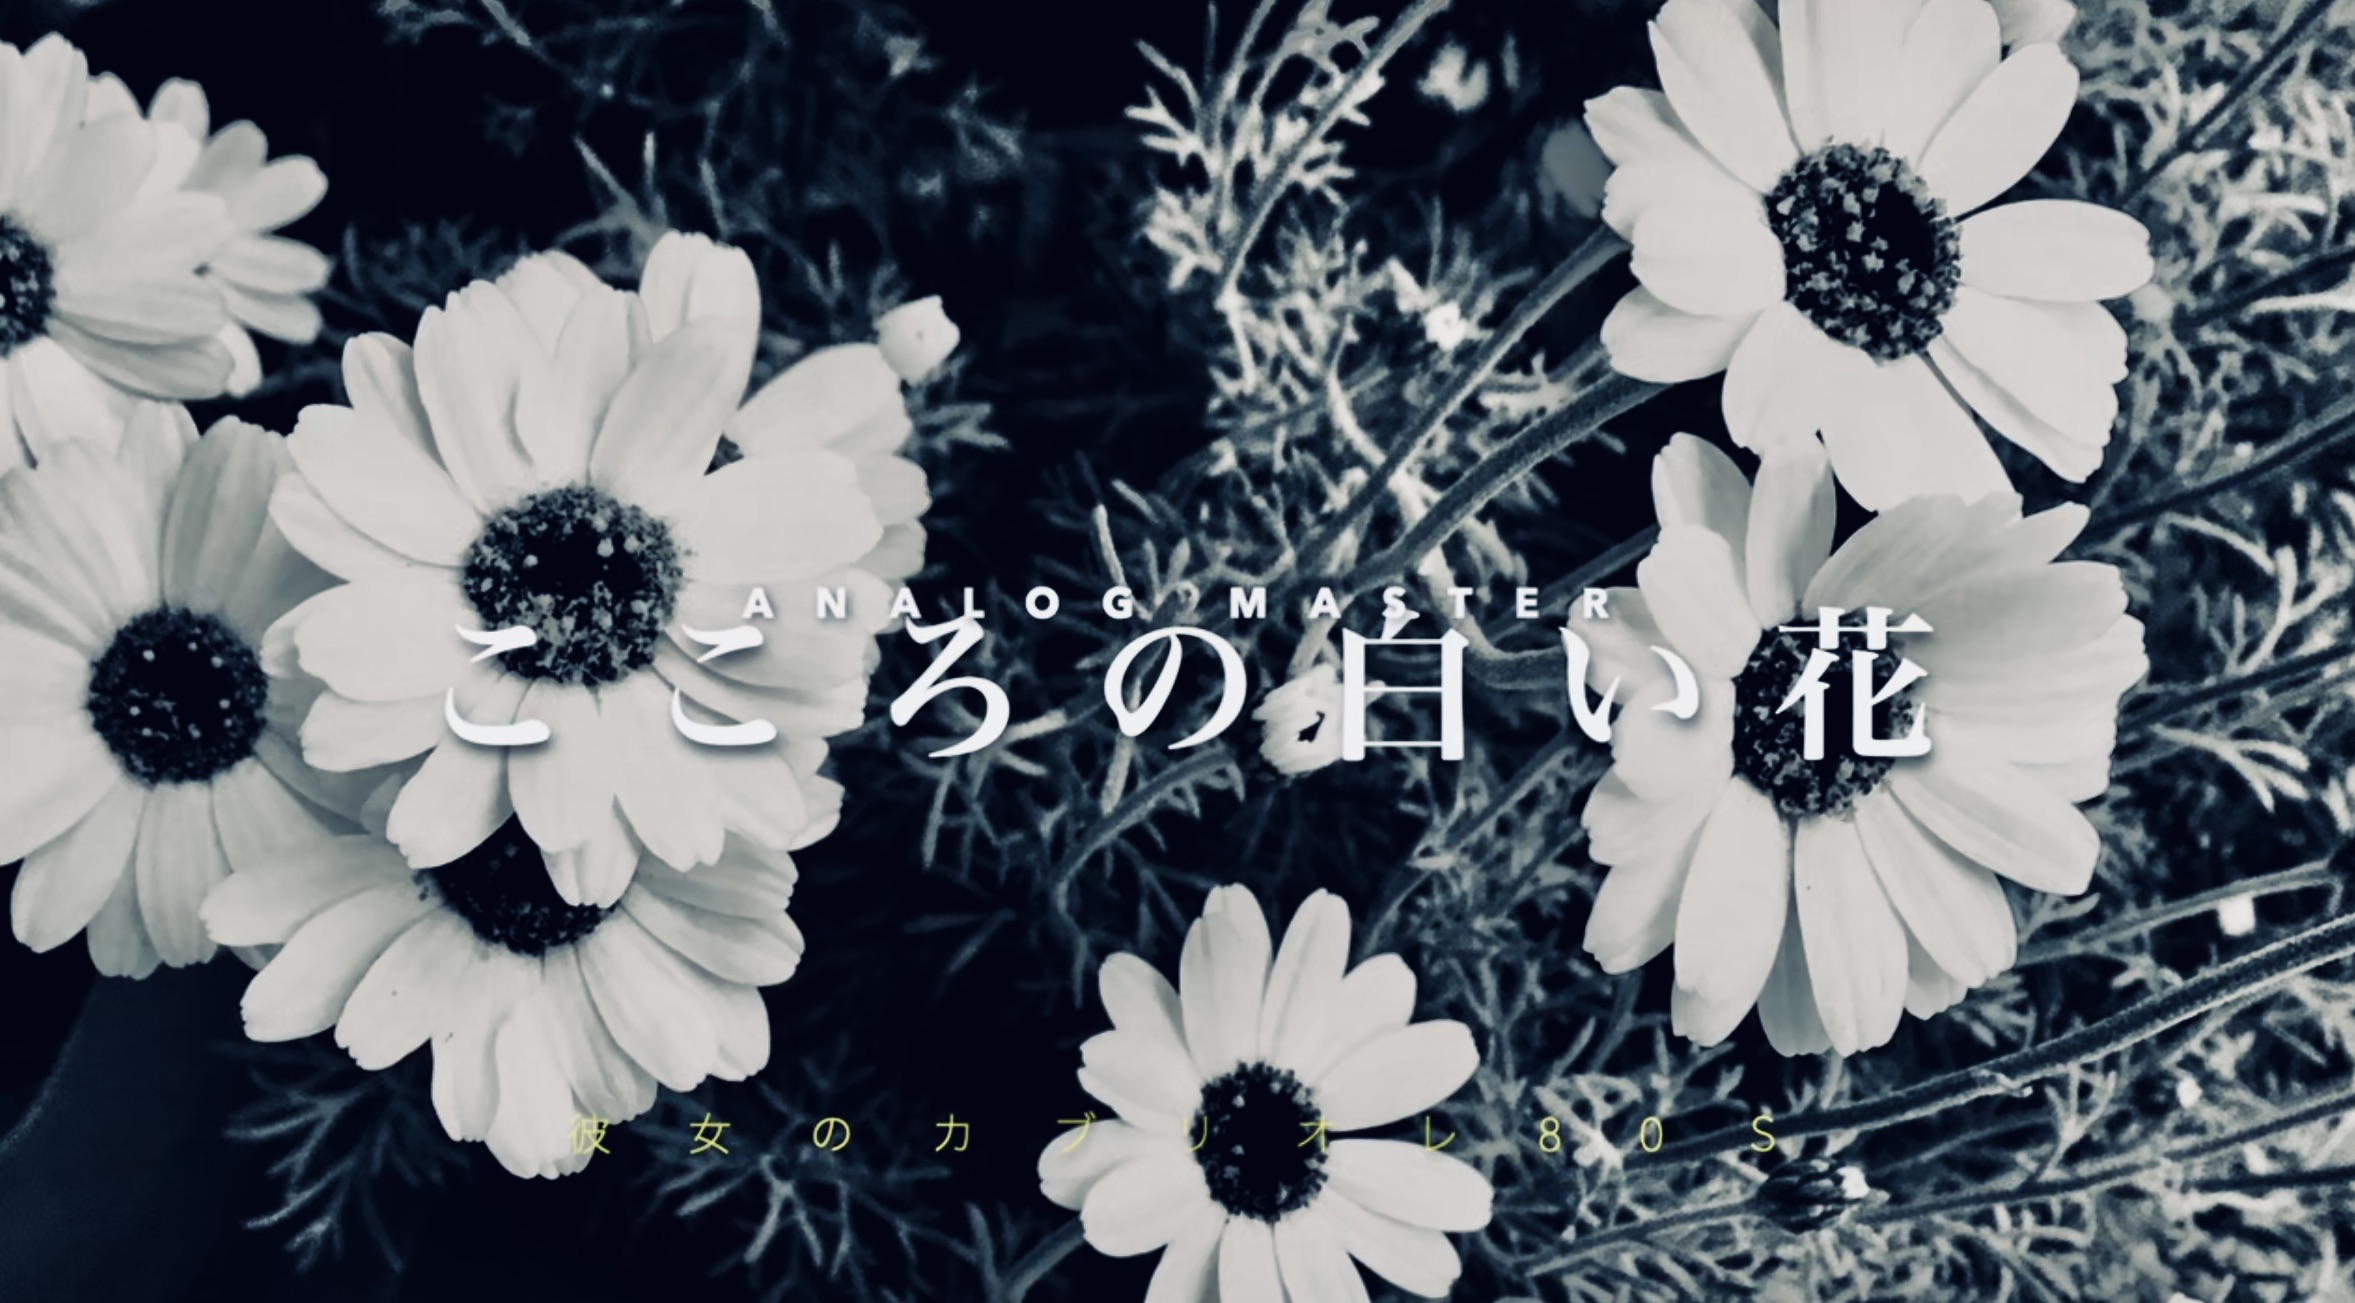 聴く人の心に白い花が満ちて咲く不思議な曲、小西寛子『こころの白い花』配信開始！